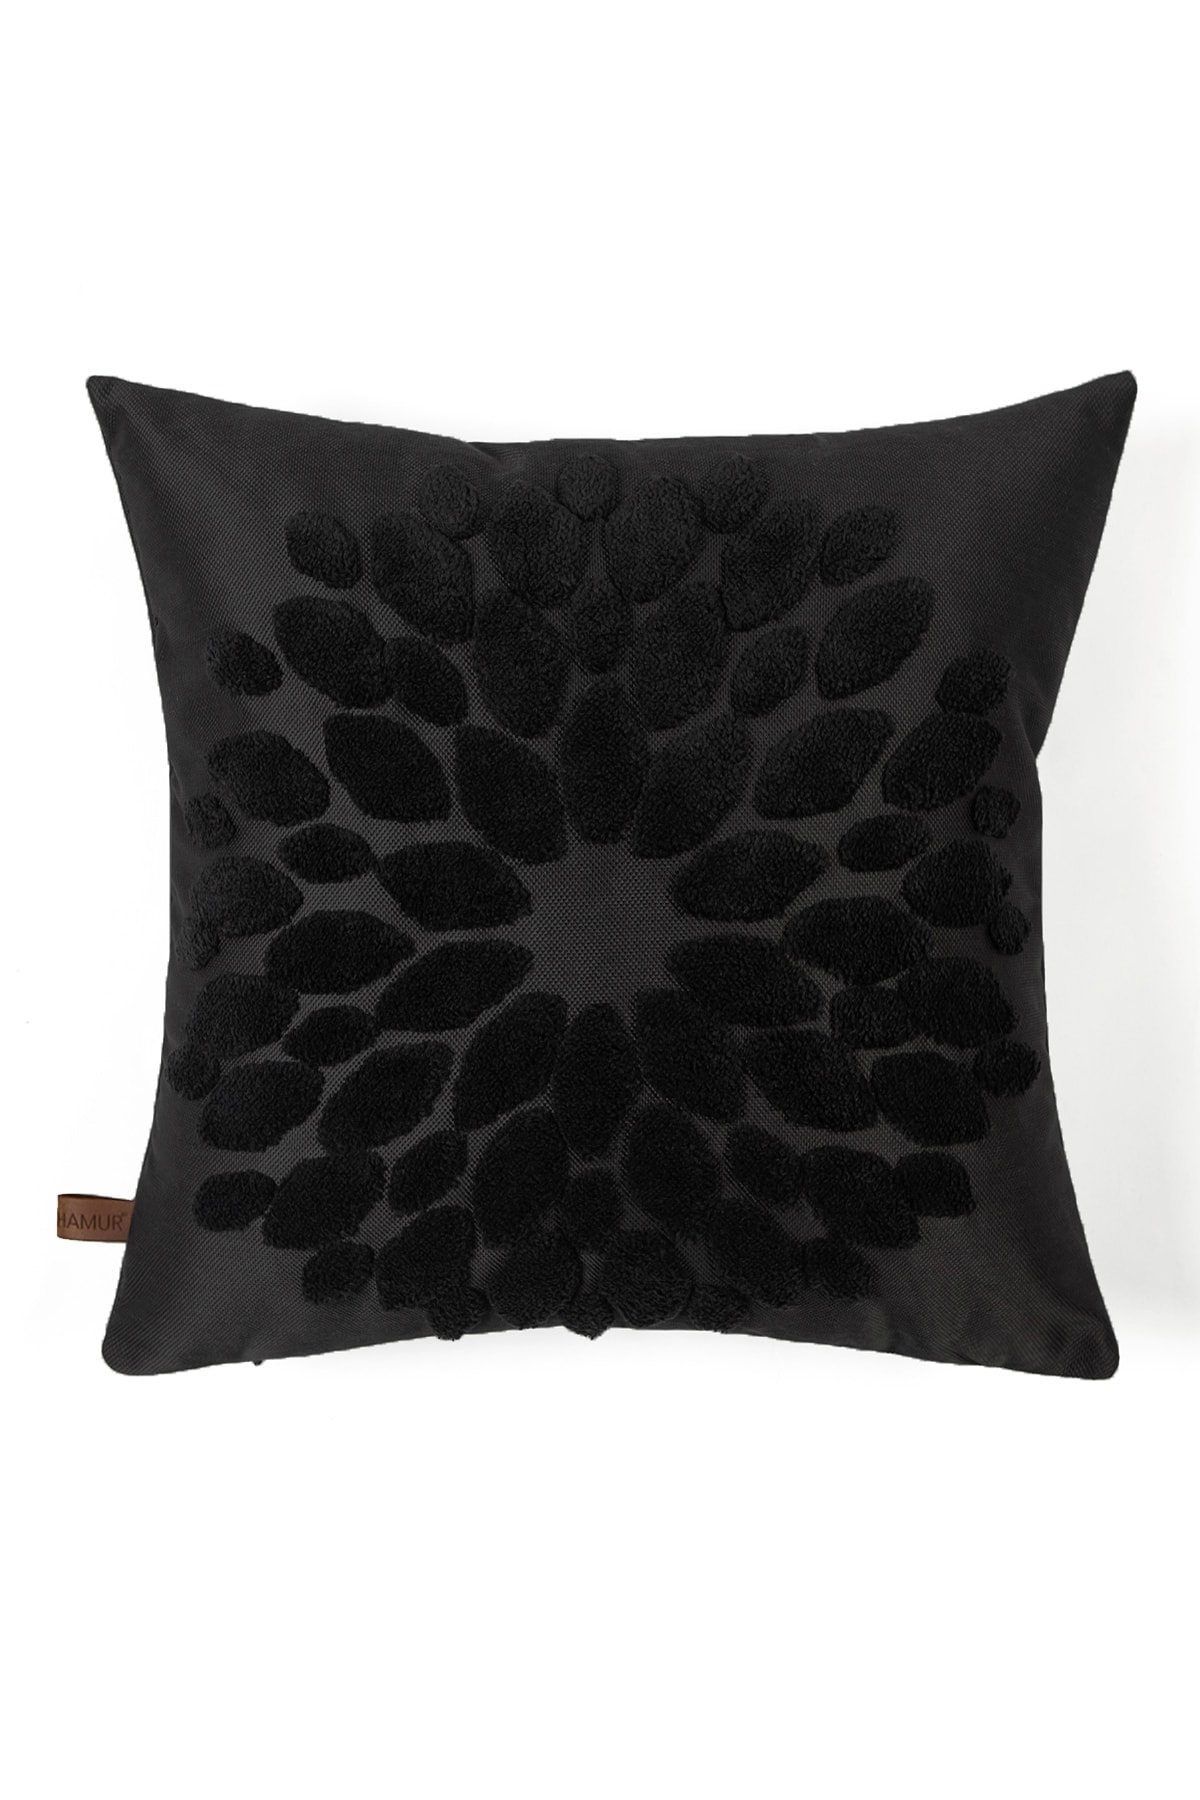 HAMUR Bohem Özel Tasarım Punch Panç Desen Kare Dekoratif Kırlent Kılıfı Flower Siyah